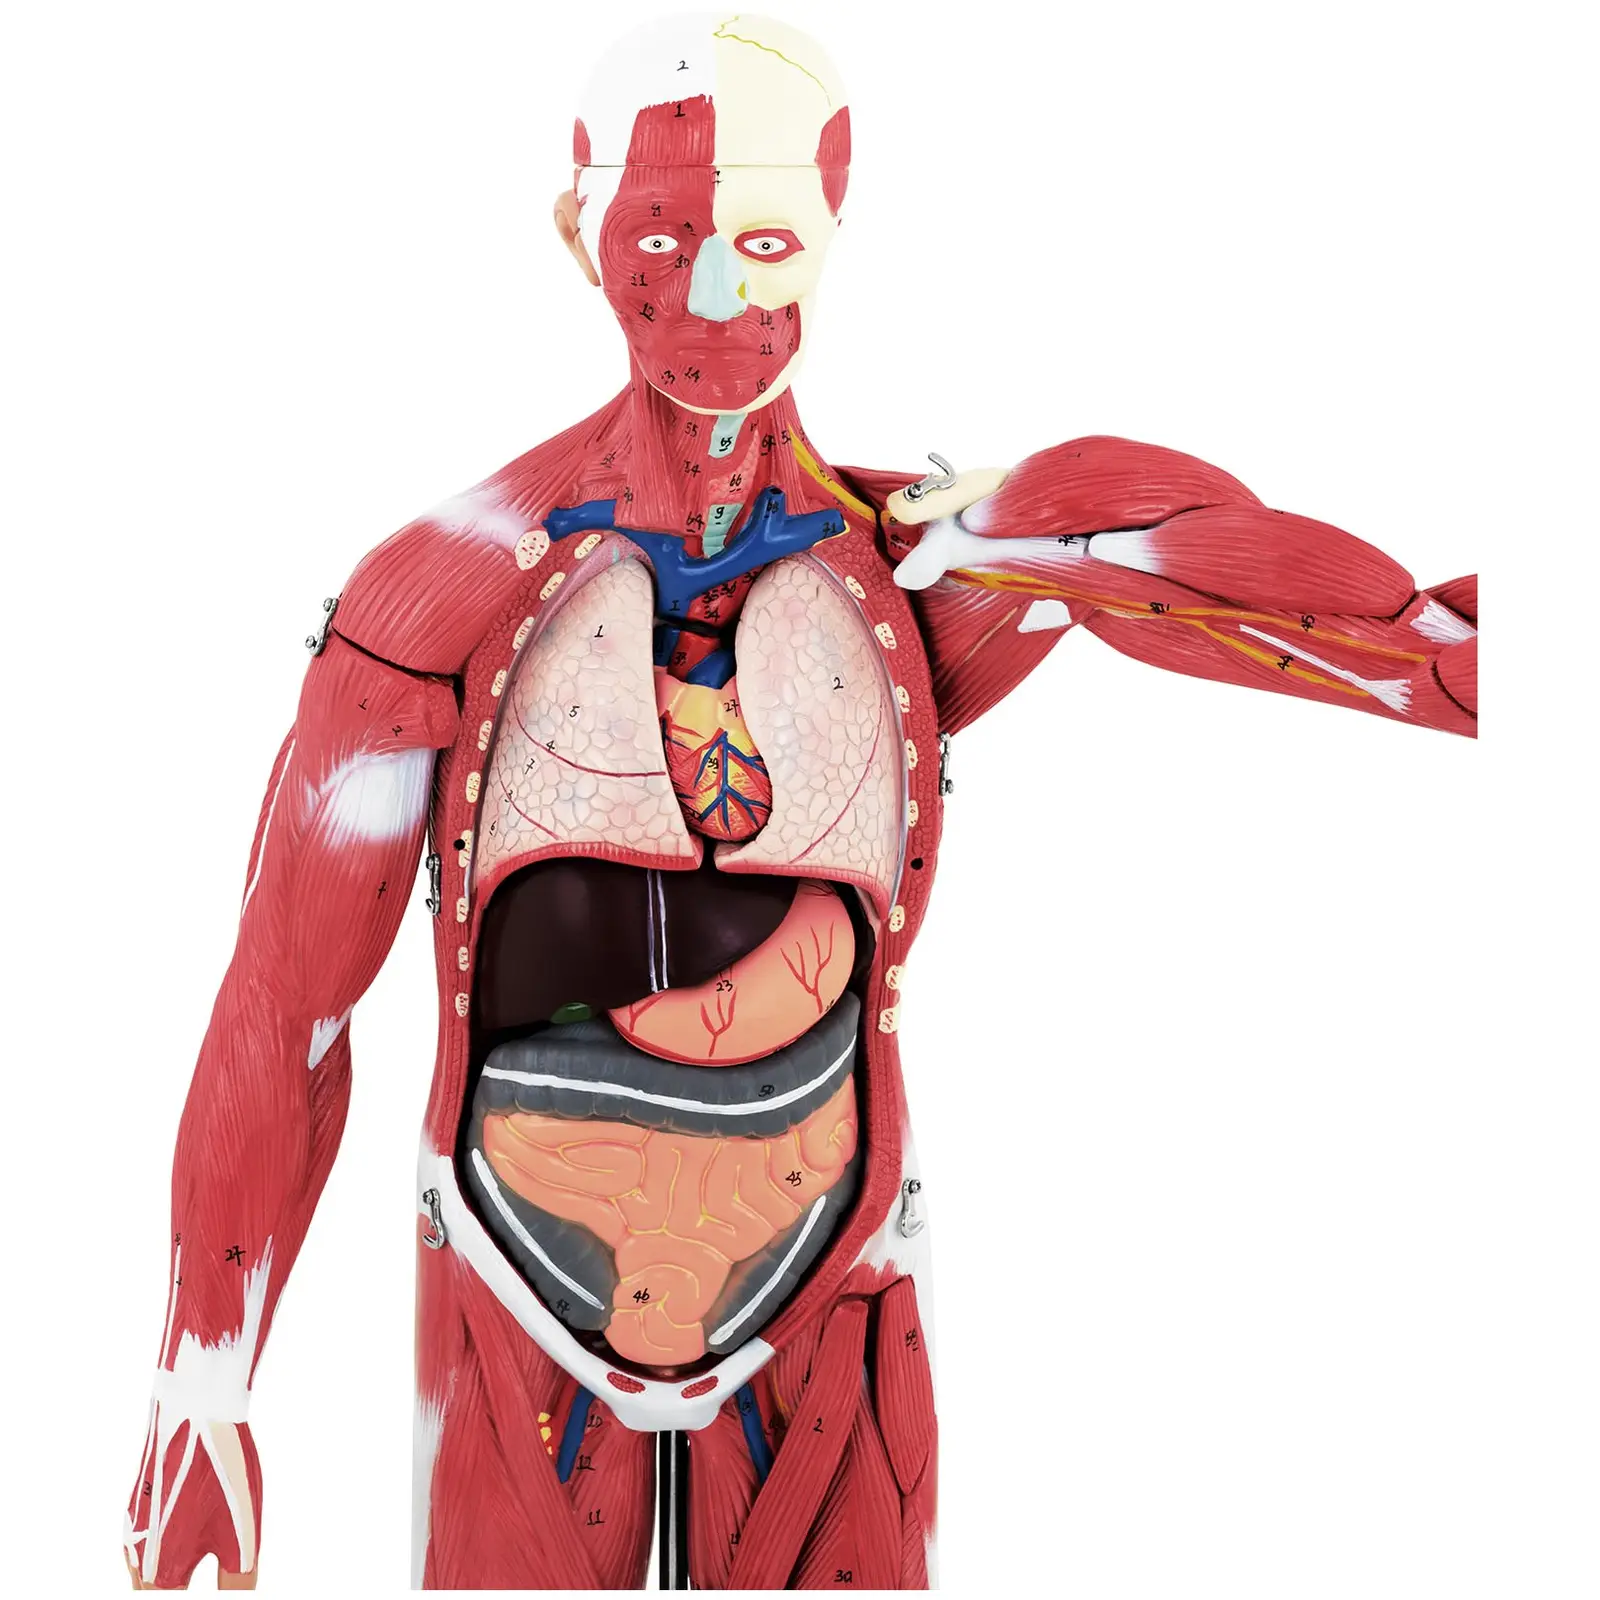 Maquette anatomique musculature humaine - Unisexe - En 27 parties - Hauteur 76 cm